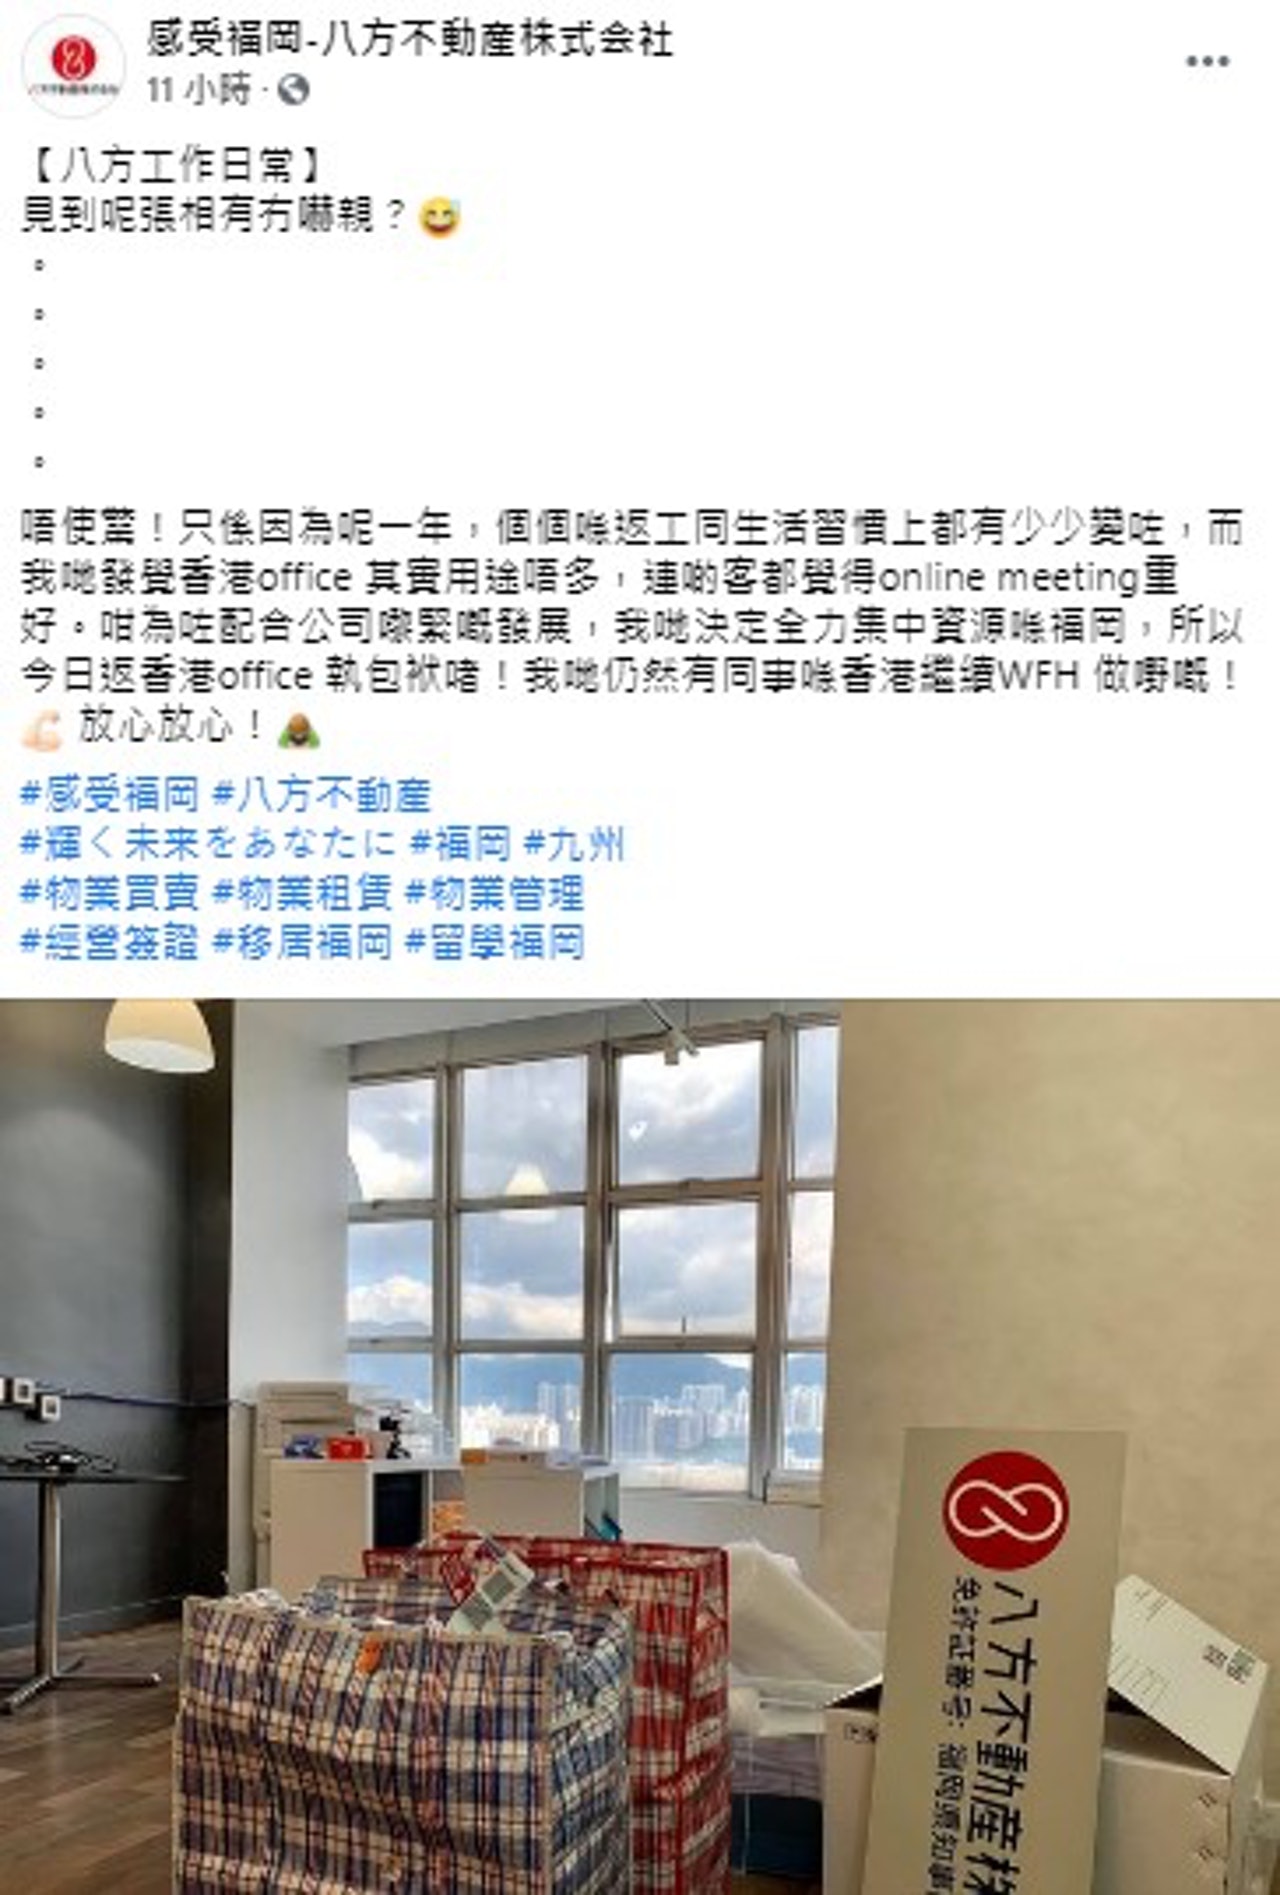 照片中可见，蒙嘉慧香港办事处放有2袋红白蓝袋以及几个纸箱，"八方不动产株式会社"的招牌亦已拆下，似乎在收拾。